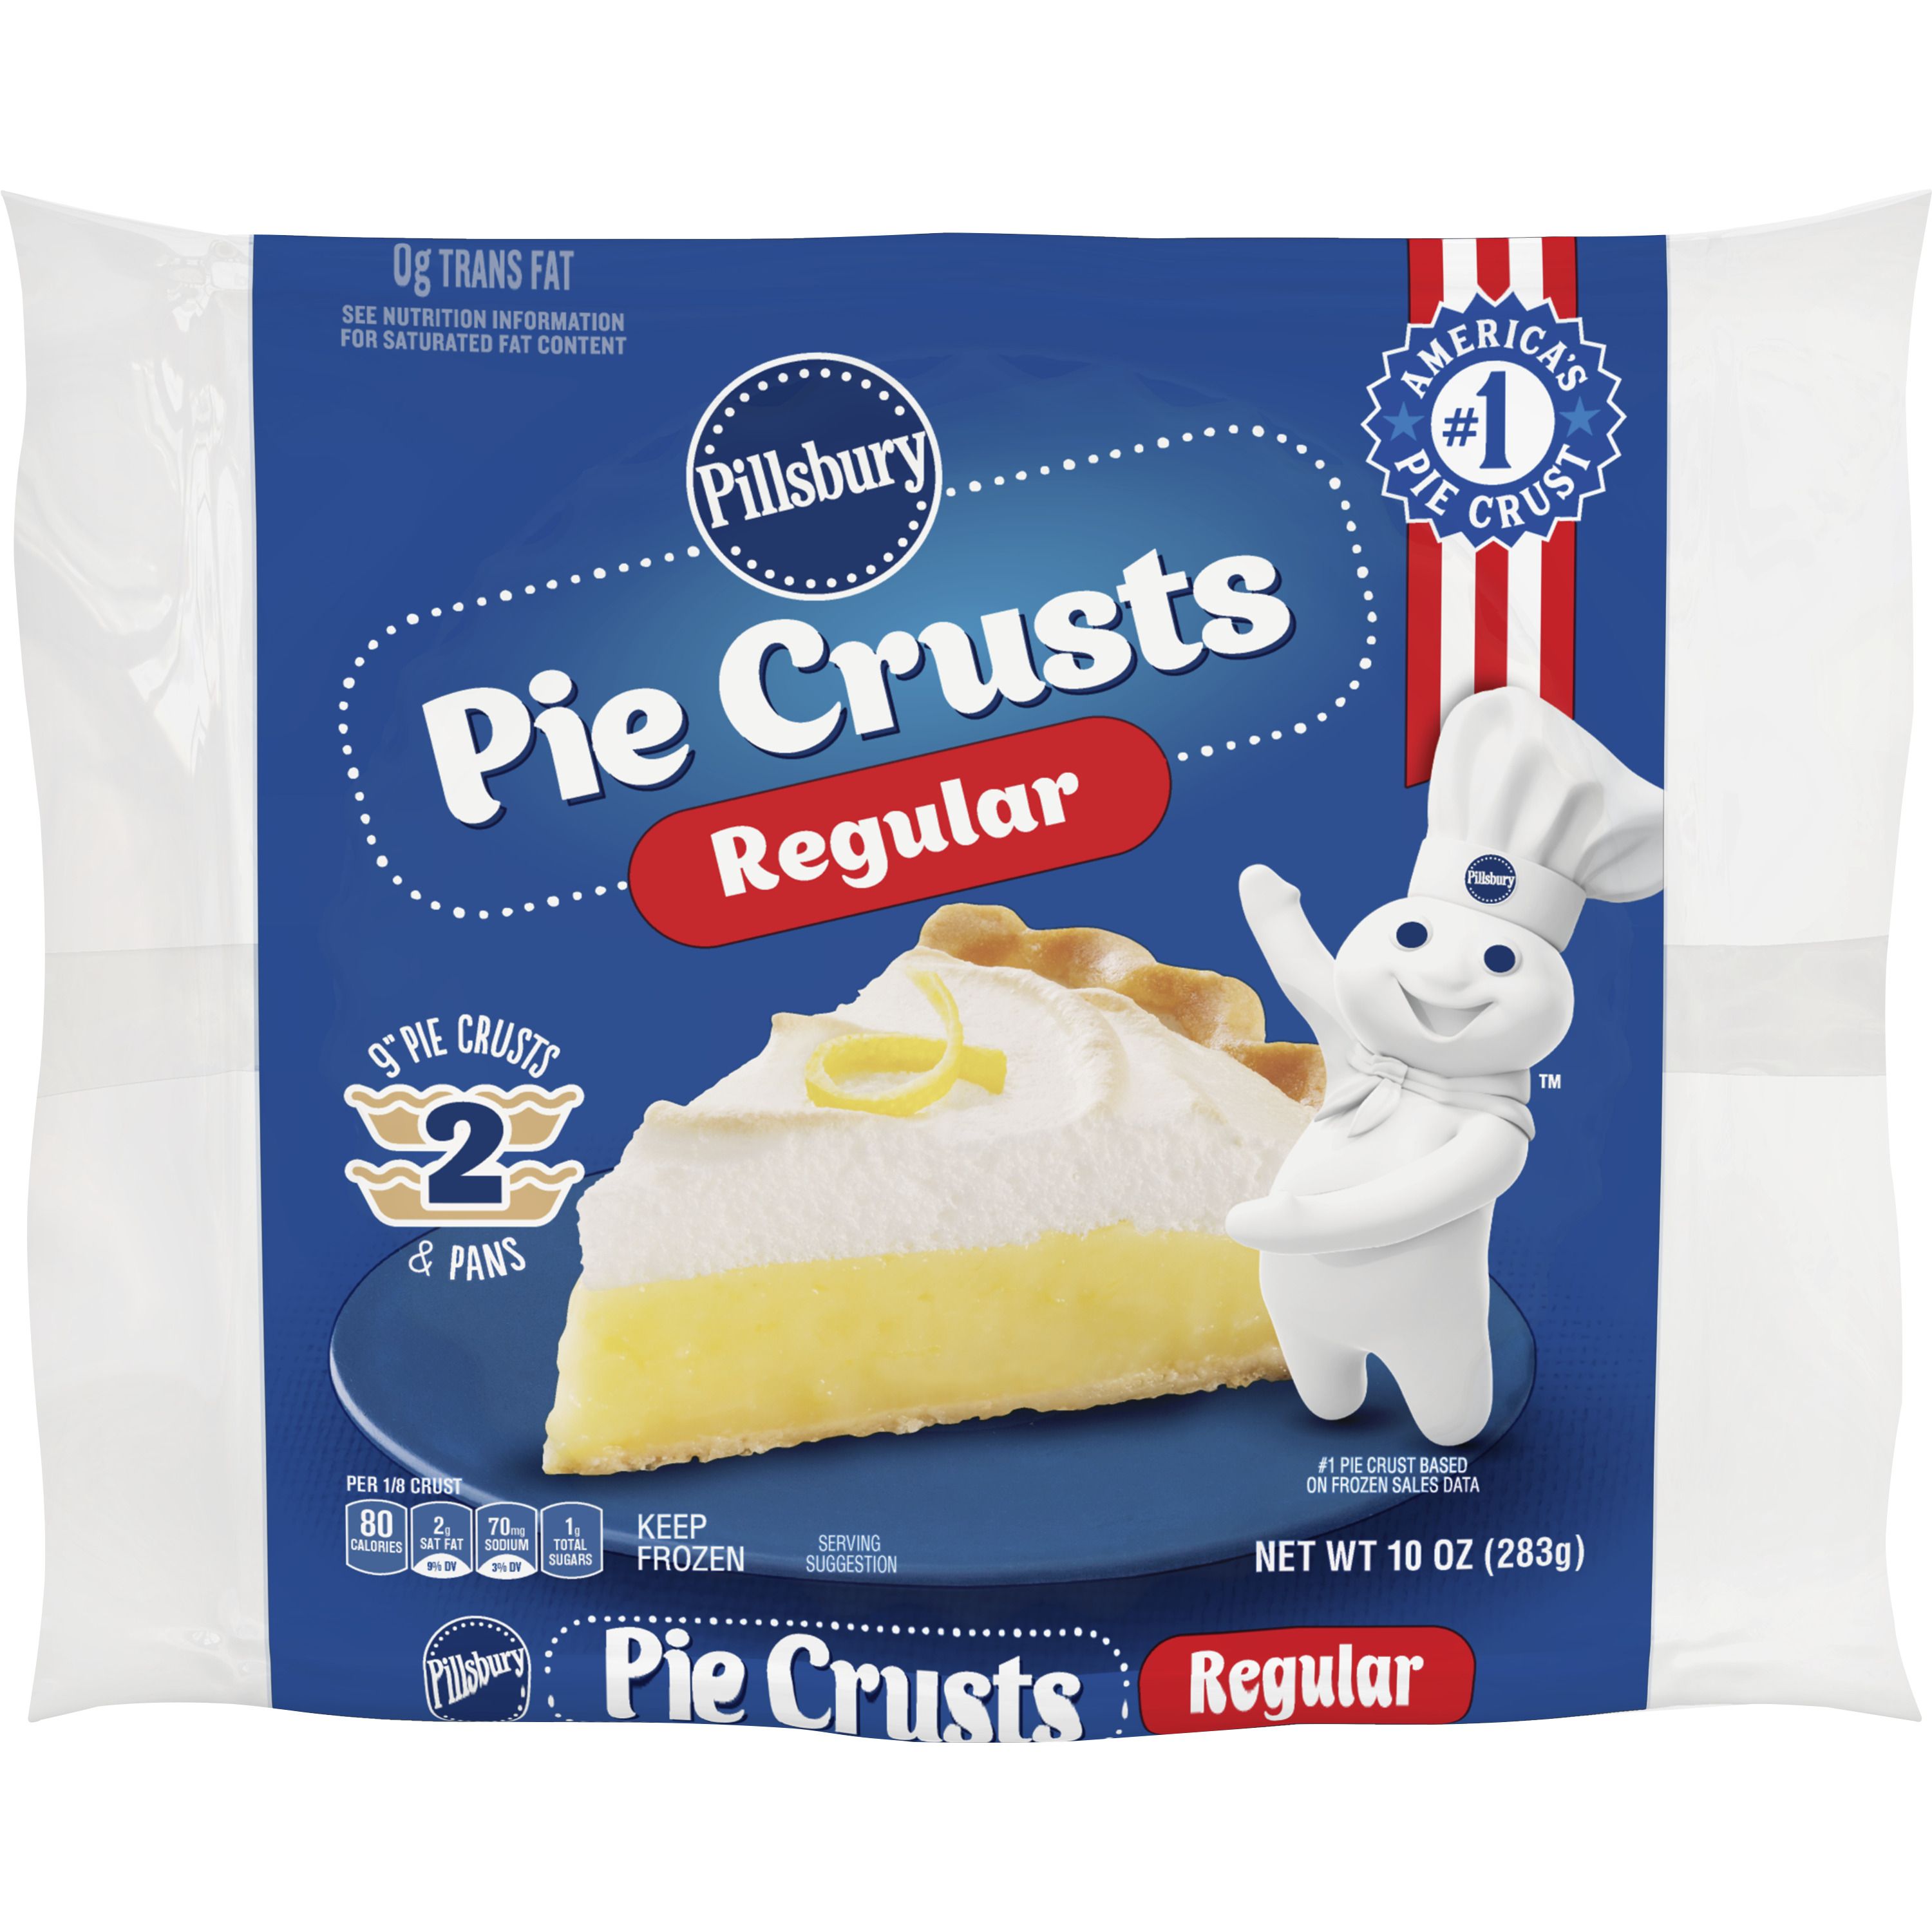 Pillsbury Frozen Pie Crust, Regular, Two 9-Inch Pie Crusts & Pans, 2 ct, 10 oz - Front